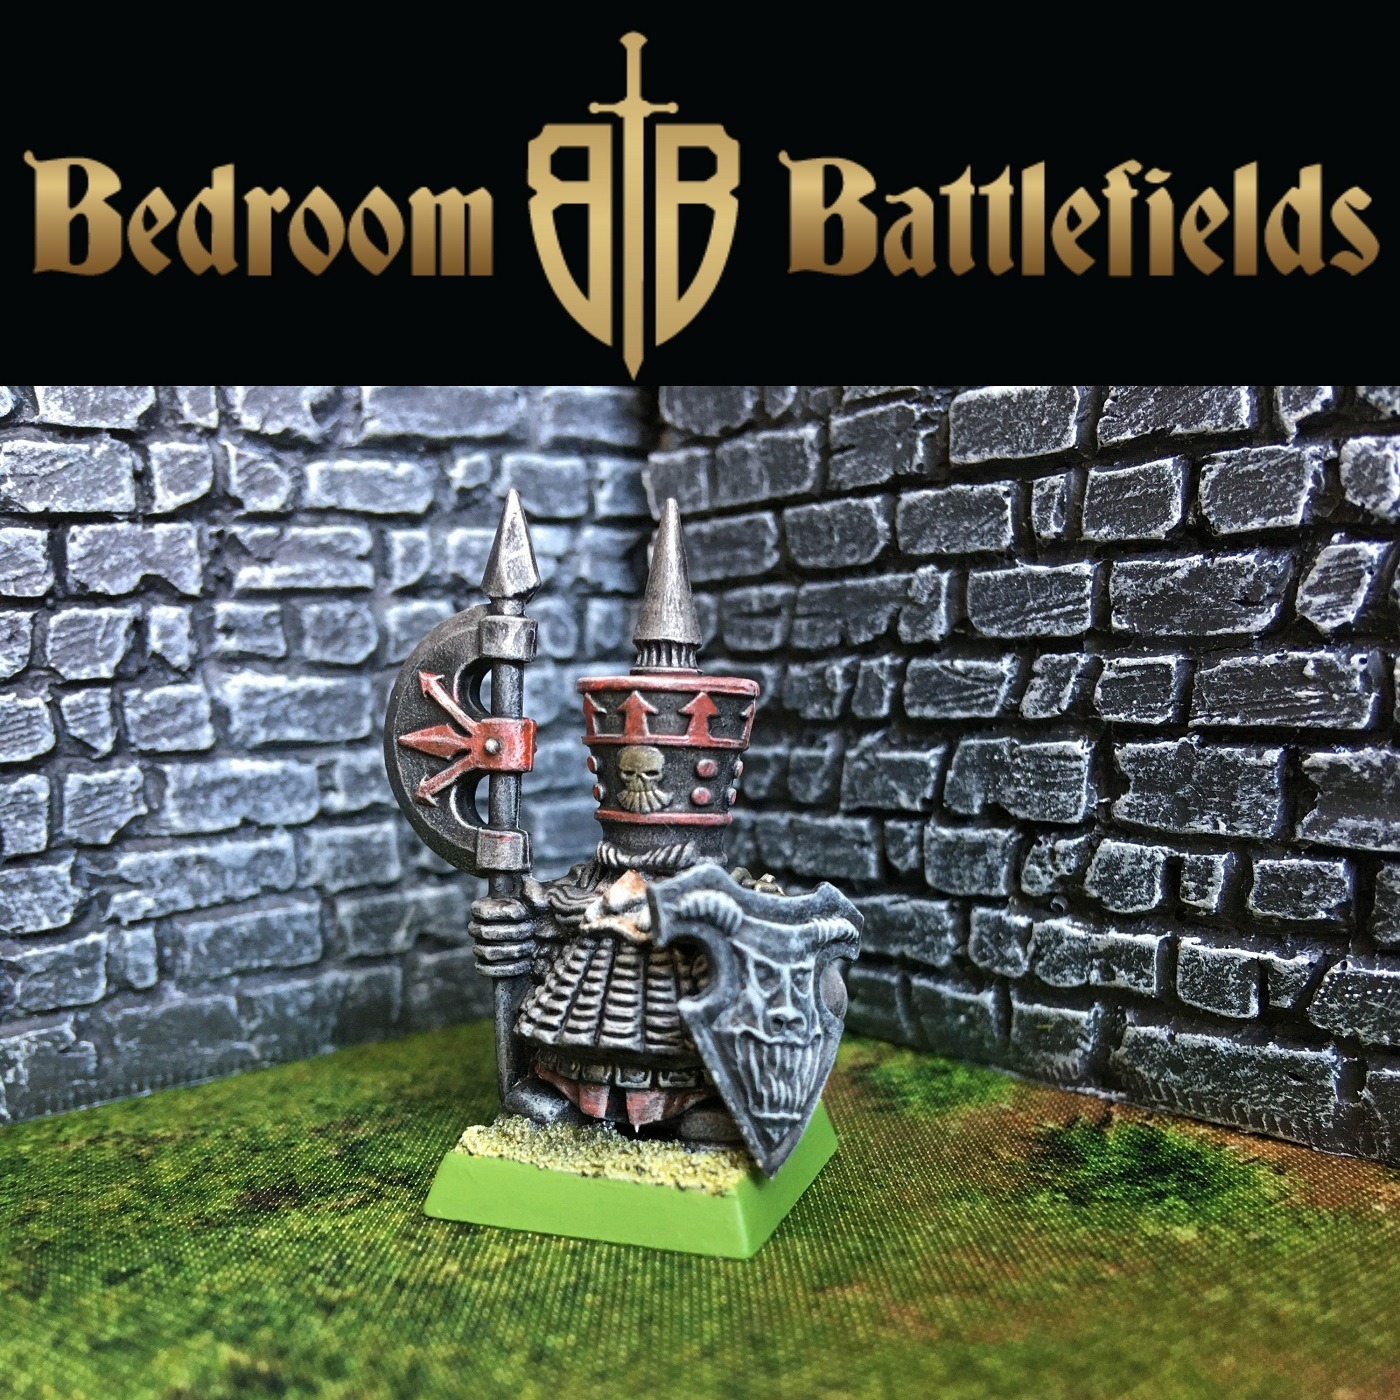 Building Terrain for Mordheim & Skirmish Games